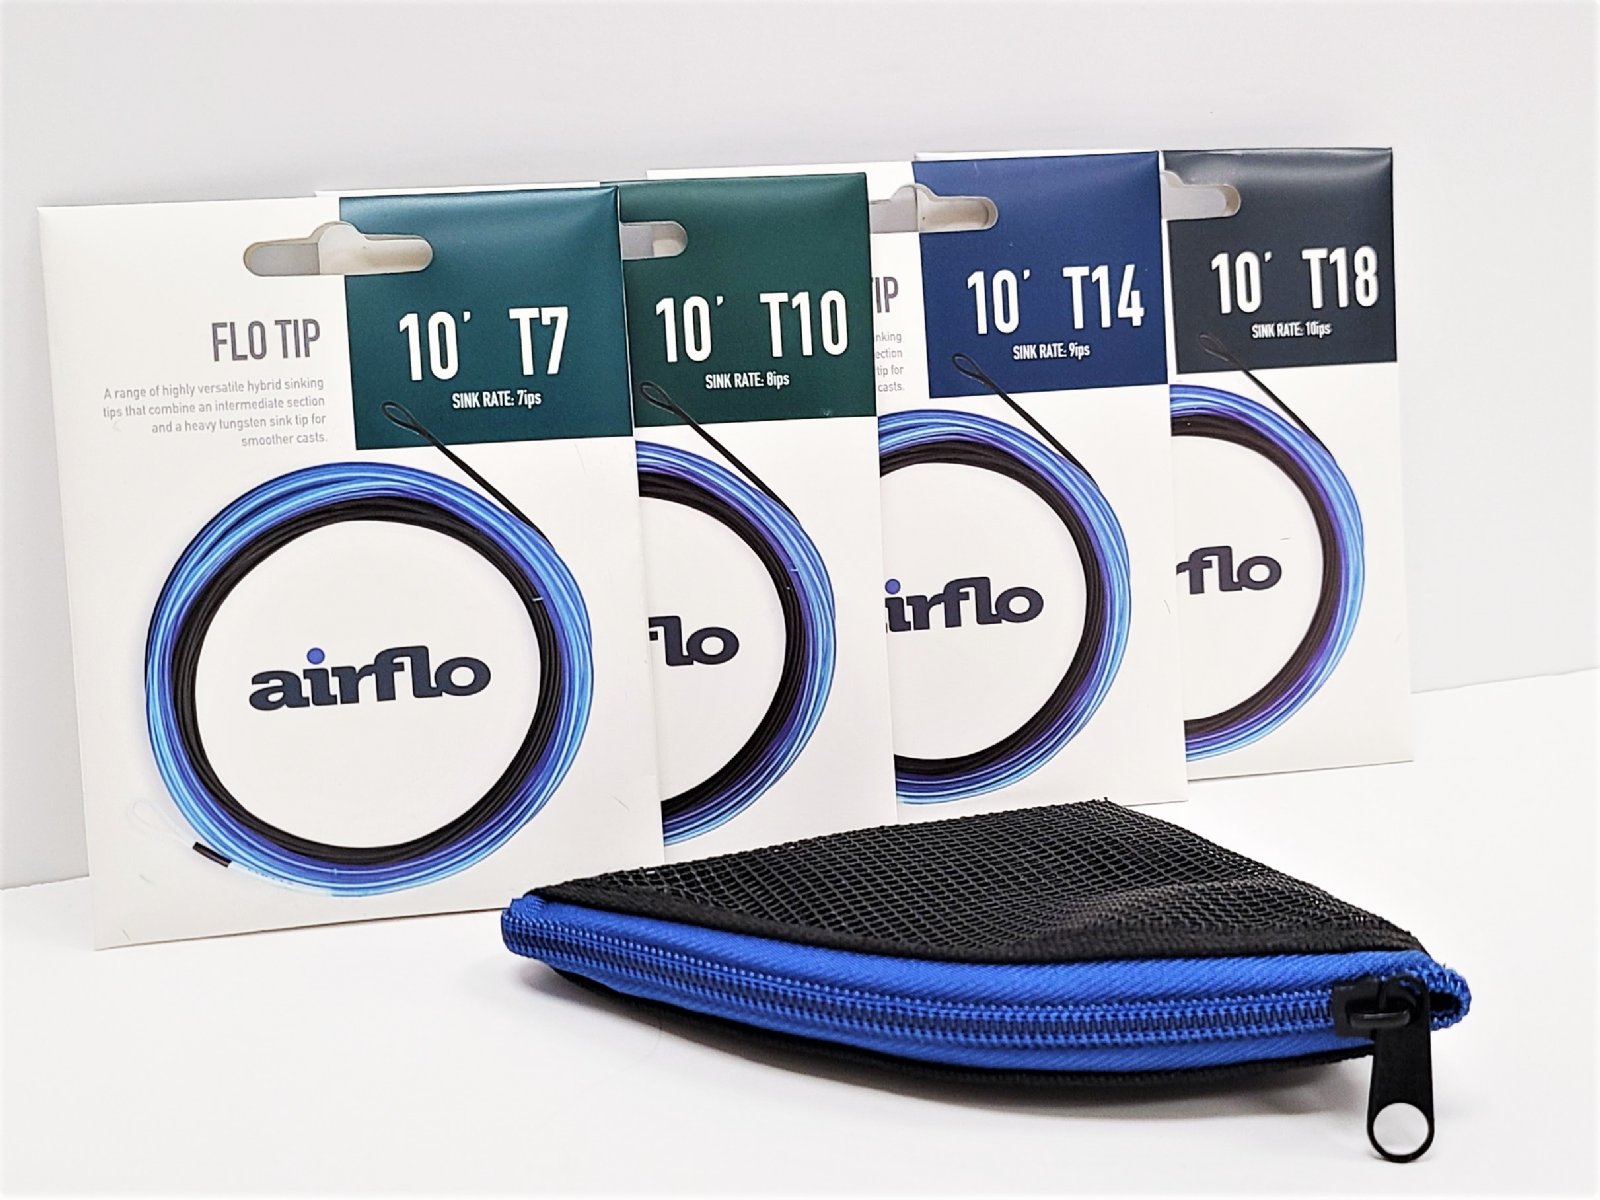 Airflo FLO Tip Kits